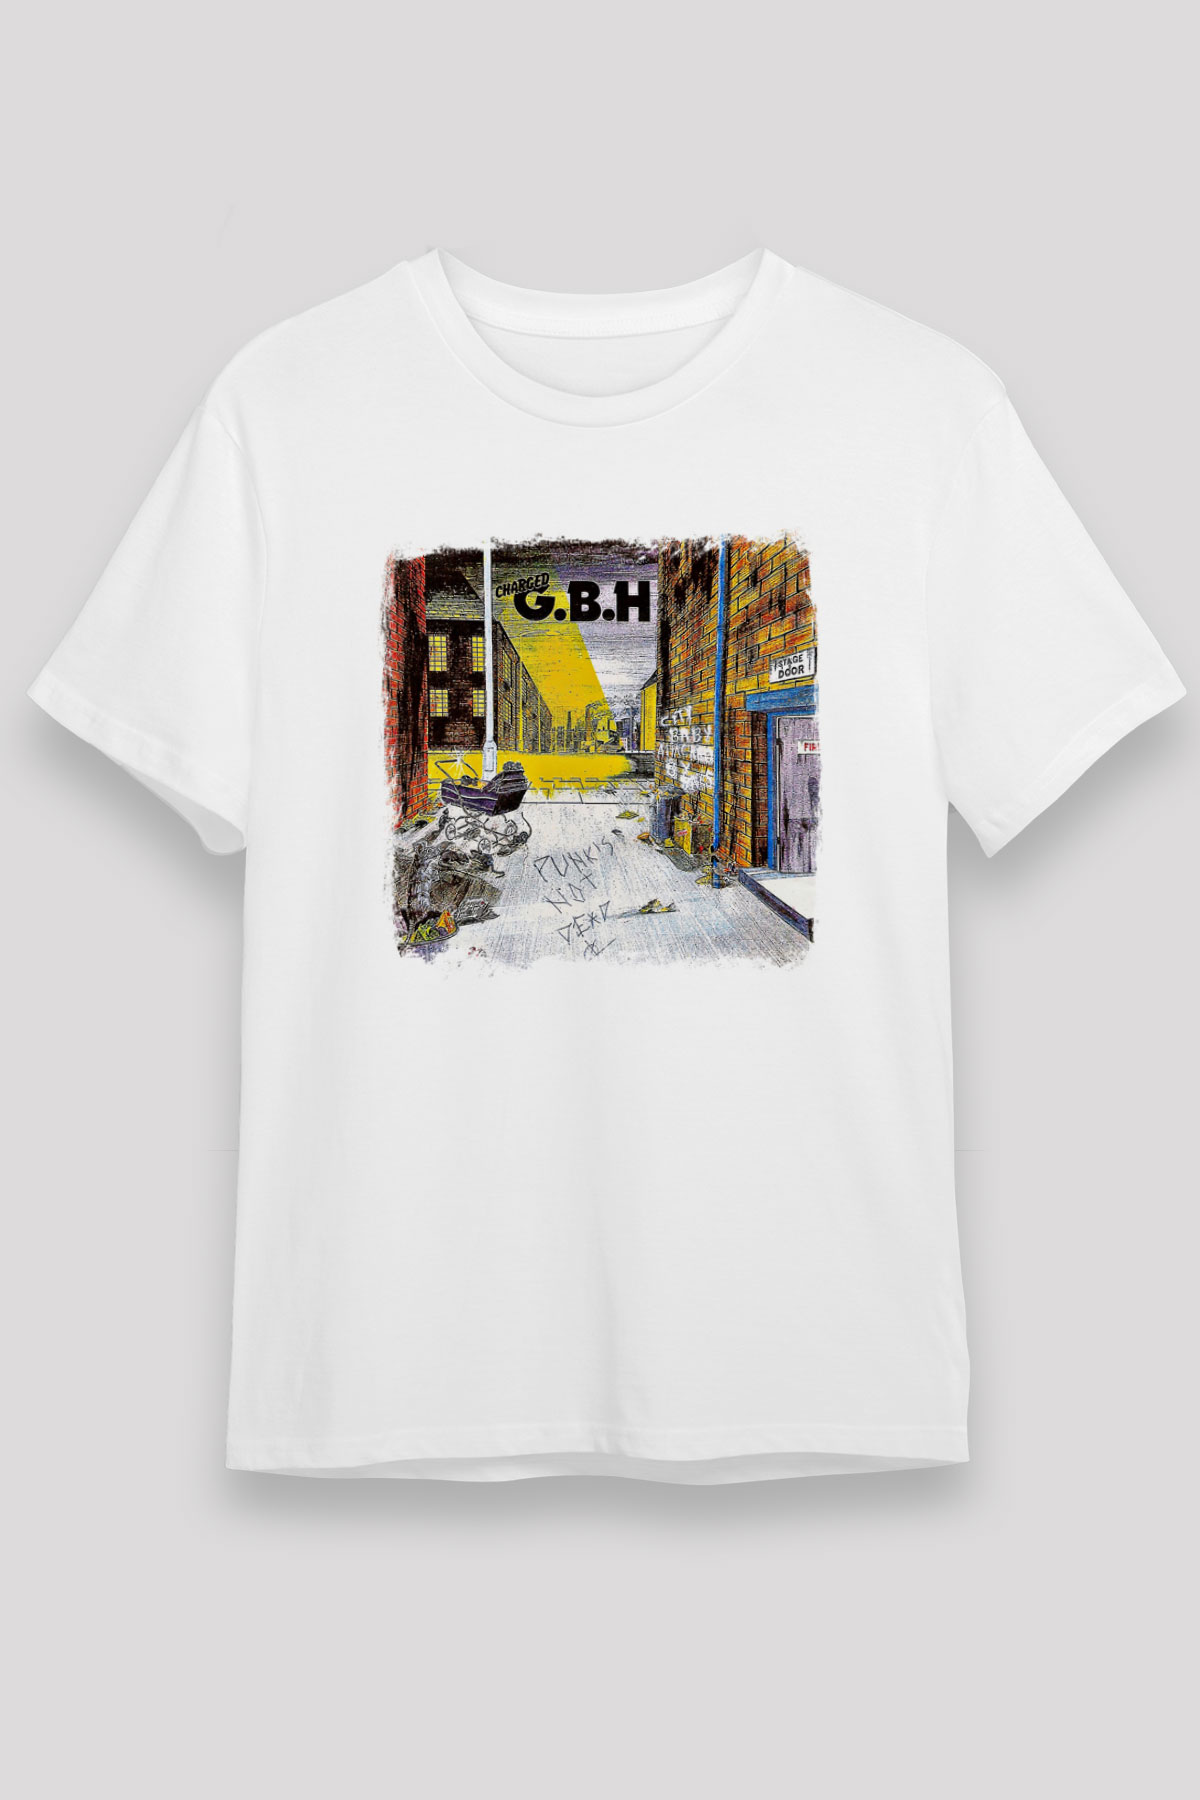 GBH T shirt, Music Band ,Unisex Tshirt 05